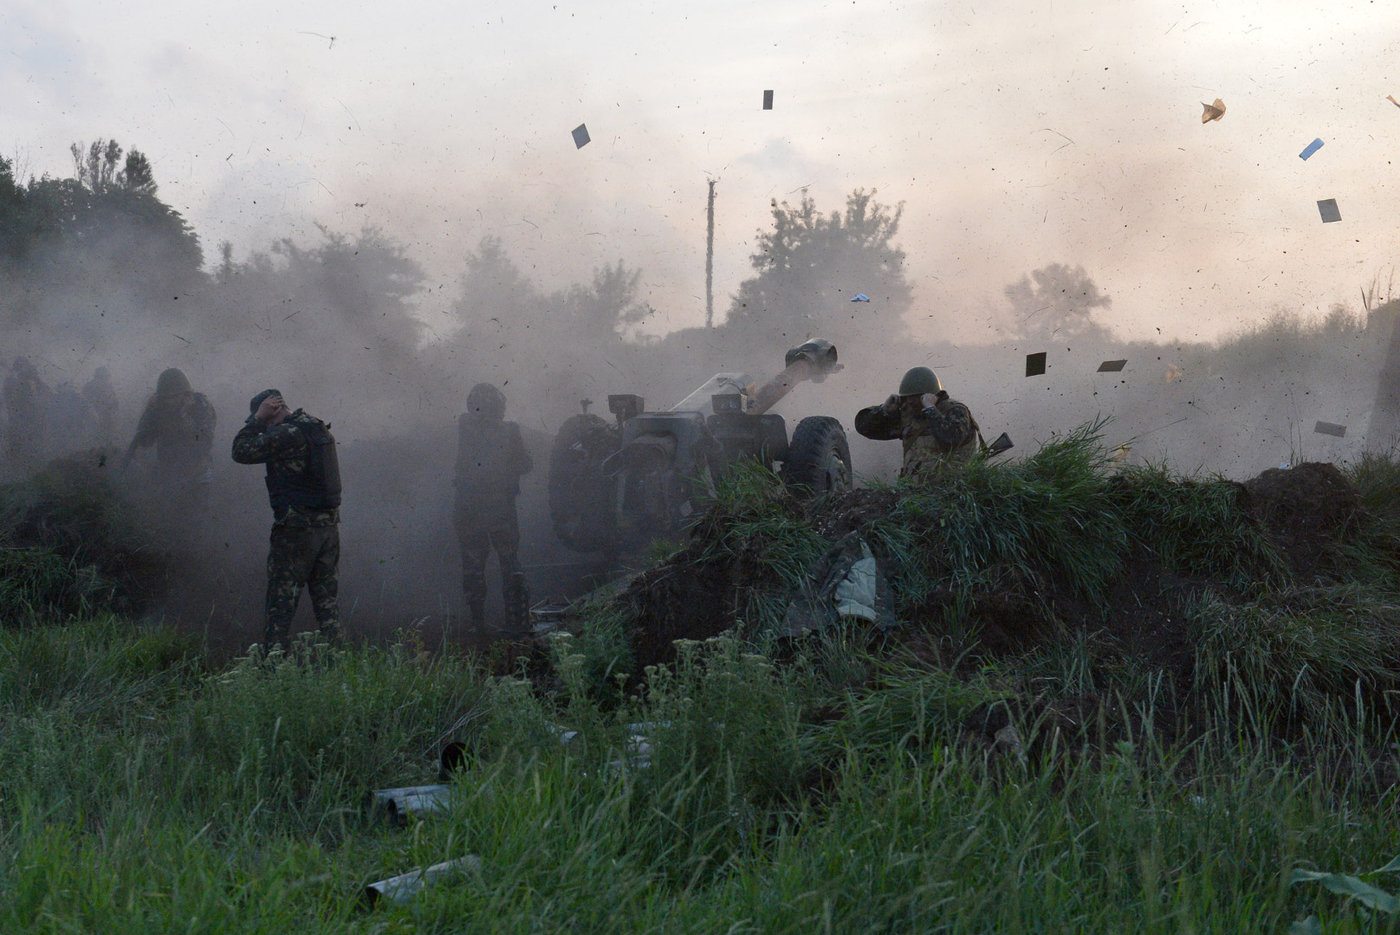 ukrajinci podruhé za pár dní zásahli ruské vojáky na cvičišti